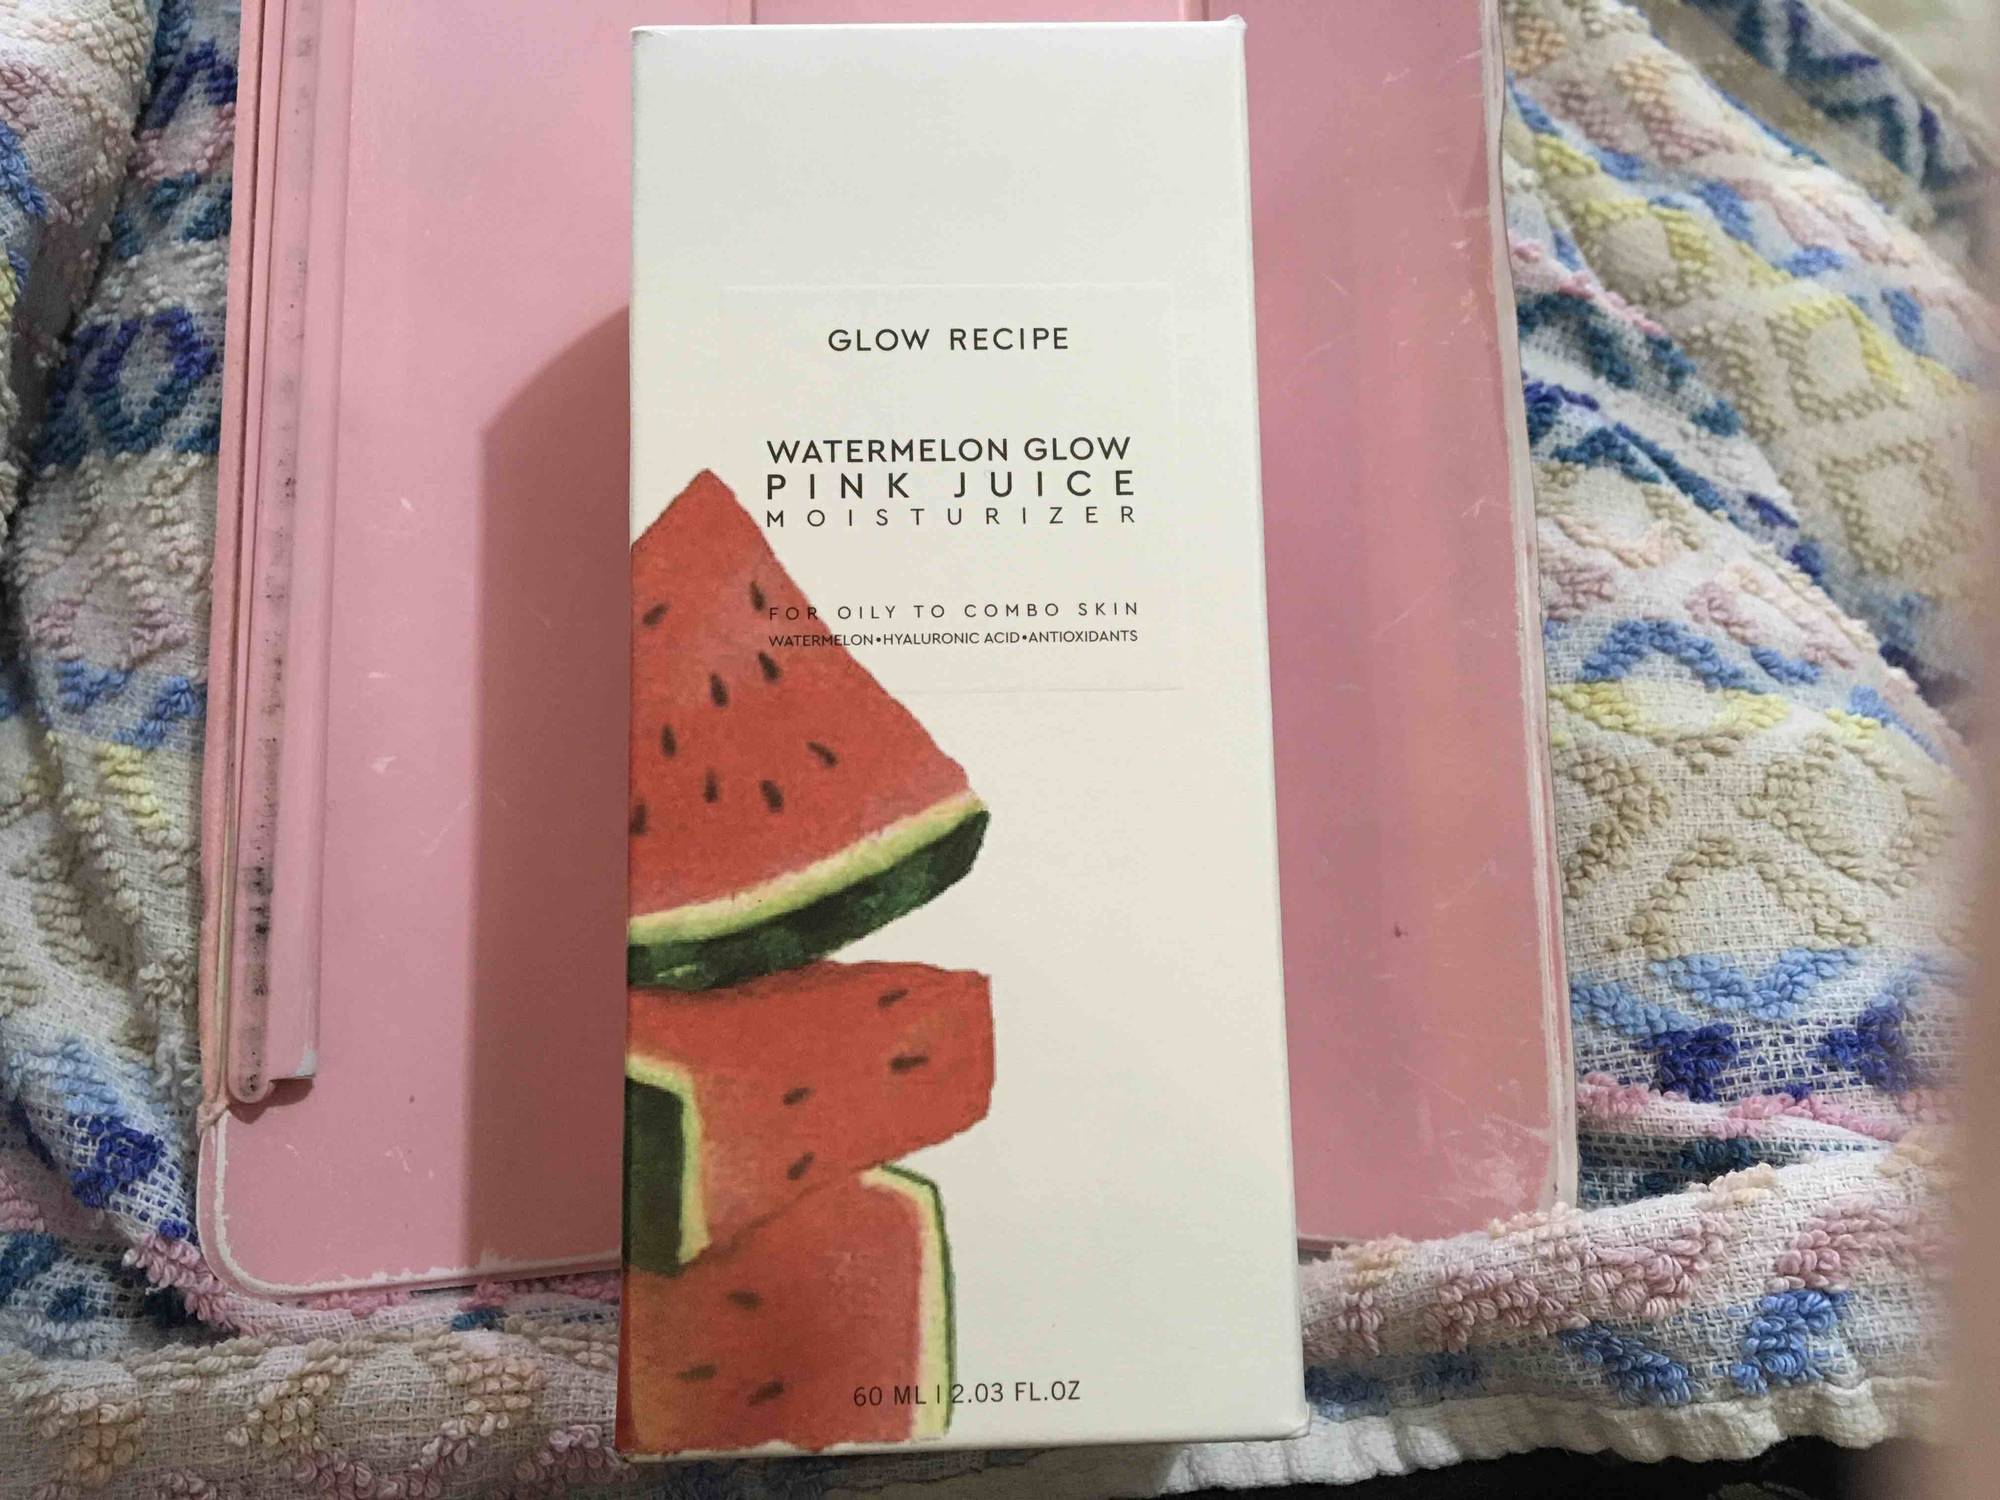 GLOW RECIPE - Watermelon glow - Pink juice moisturizer